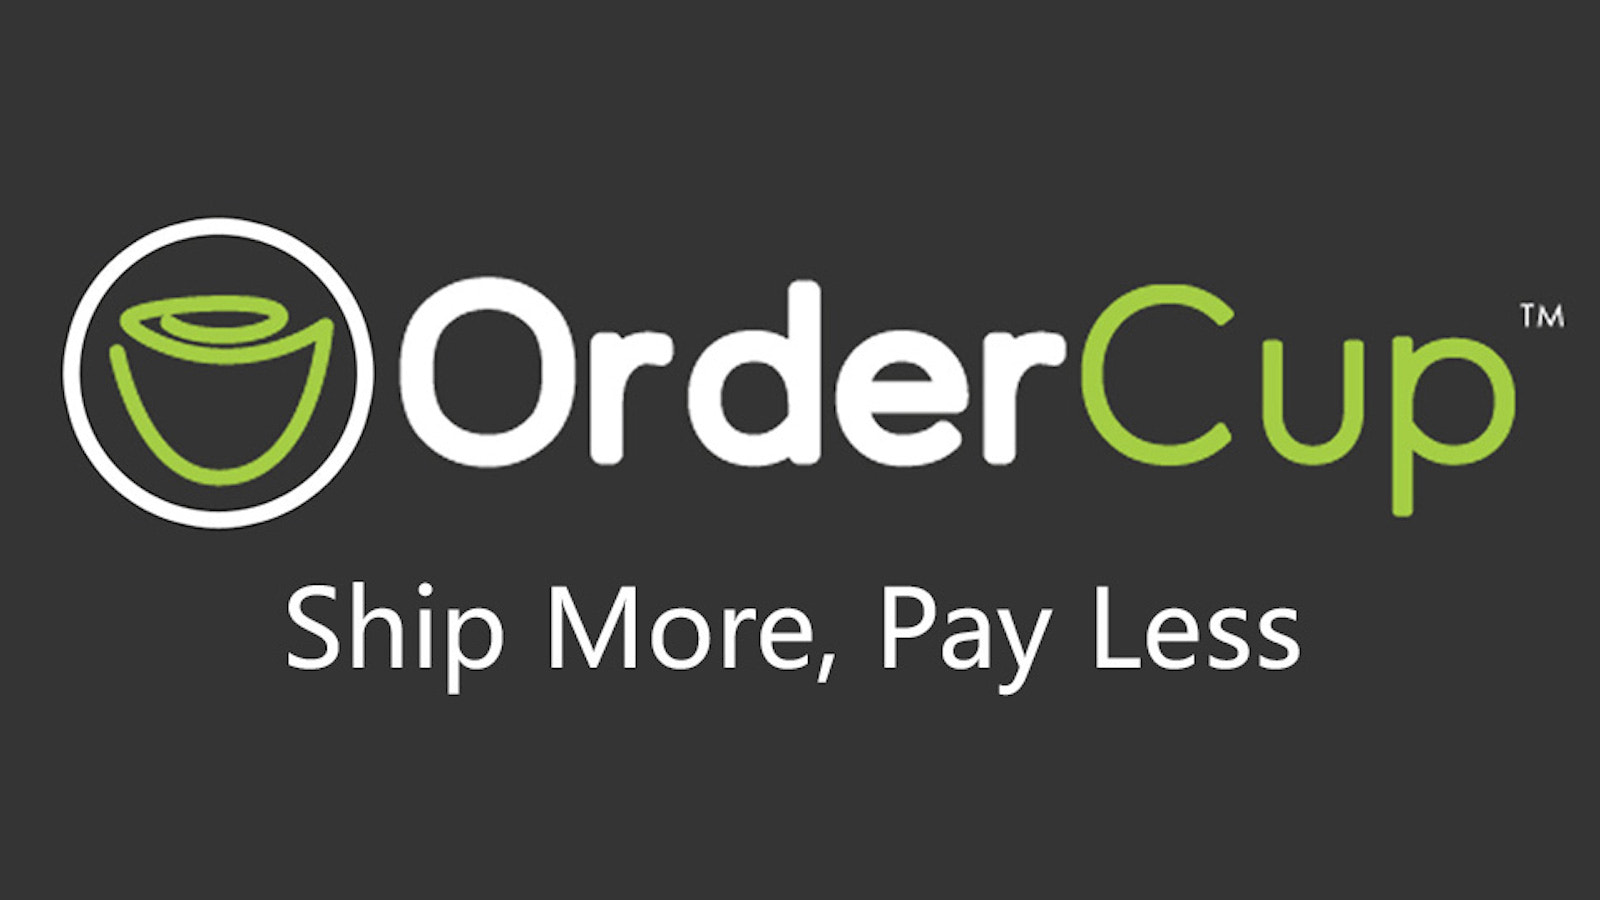 OrderCup: ¡Envía más, paga menos!